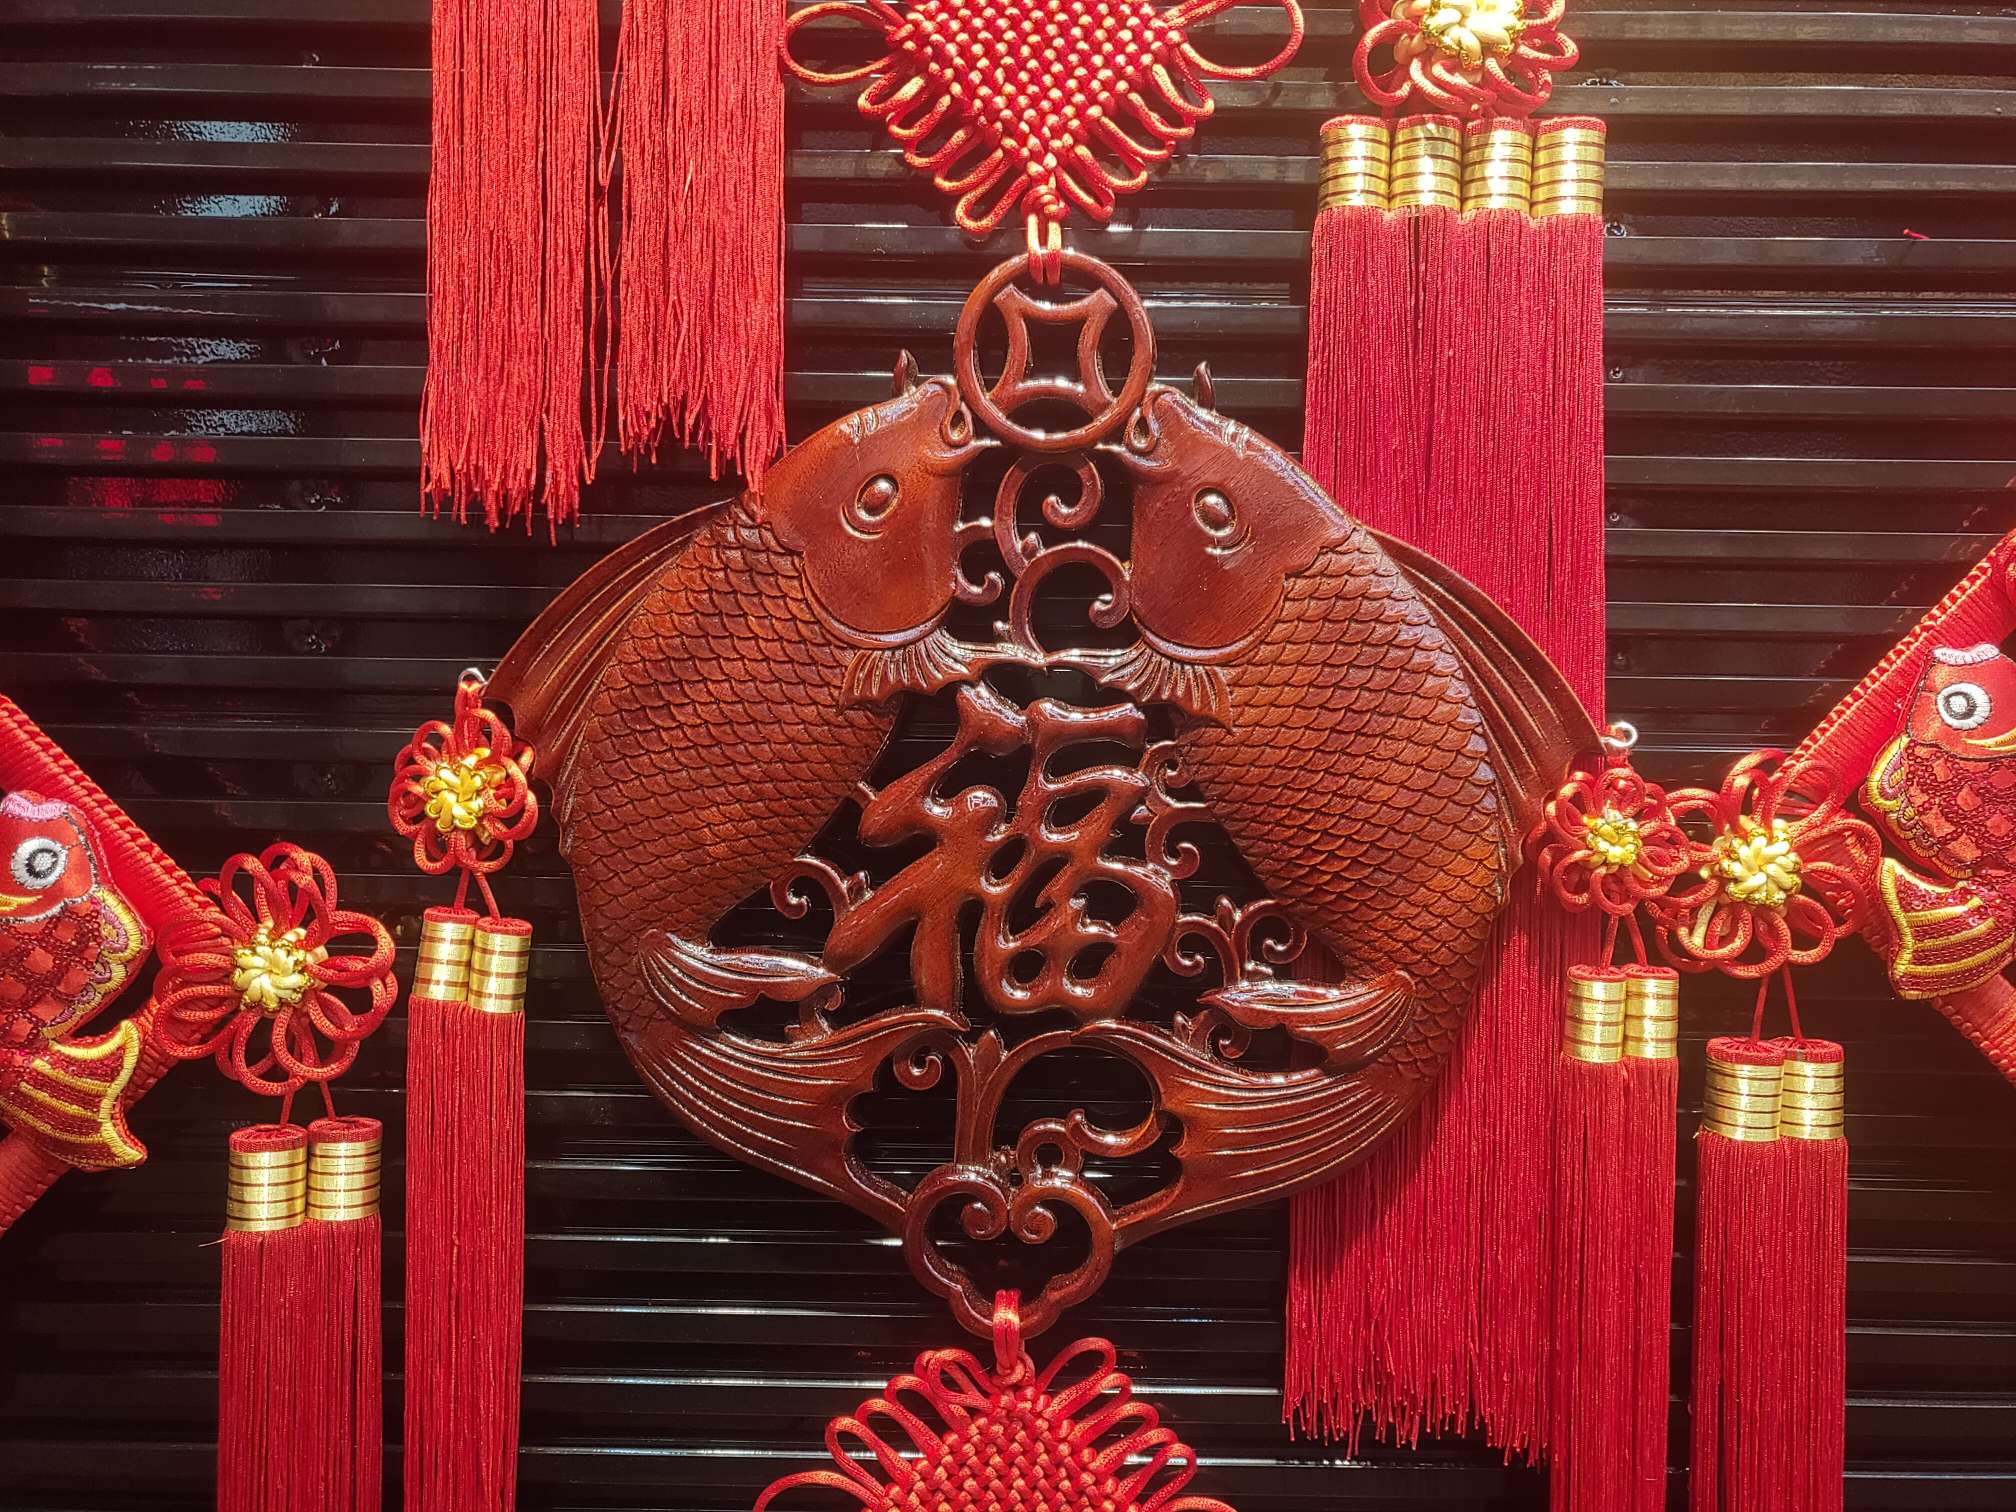 40#方形木雕36春节喜庆用品节日用品红木精品